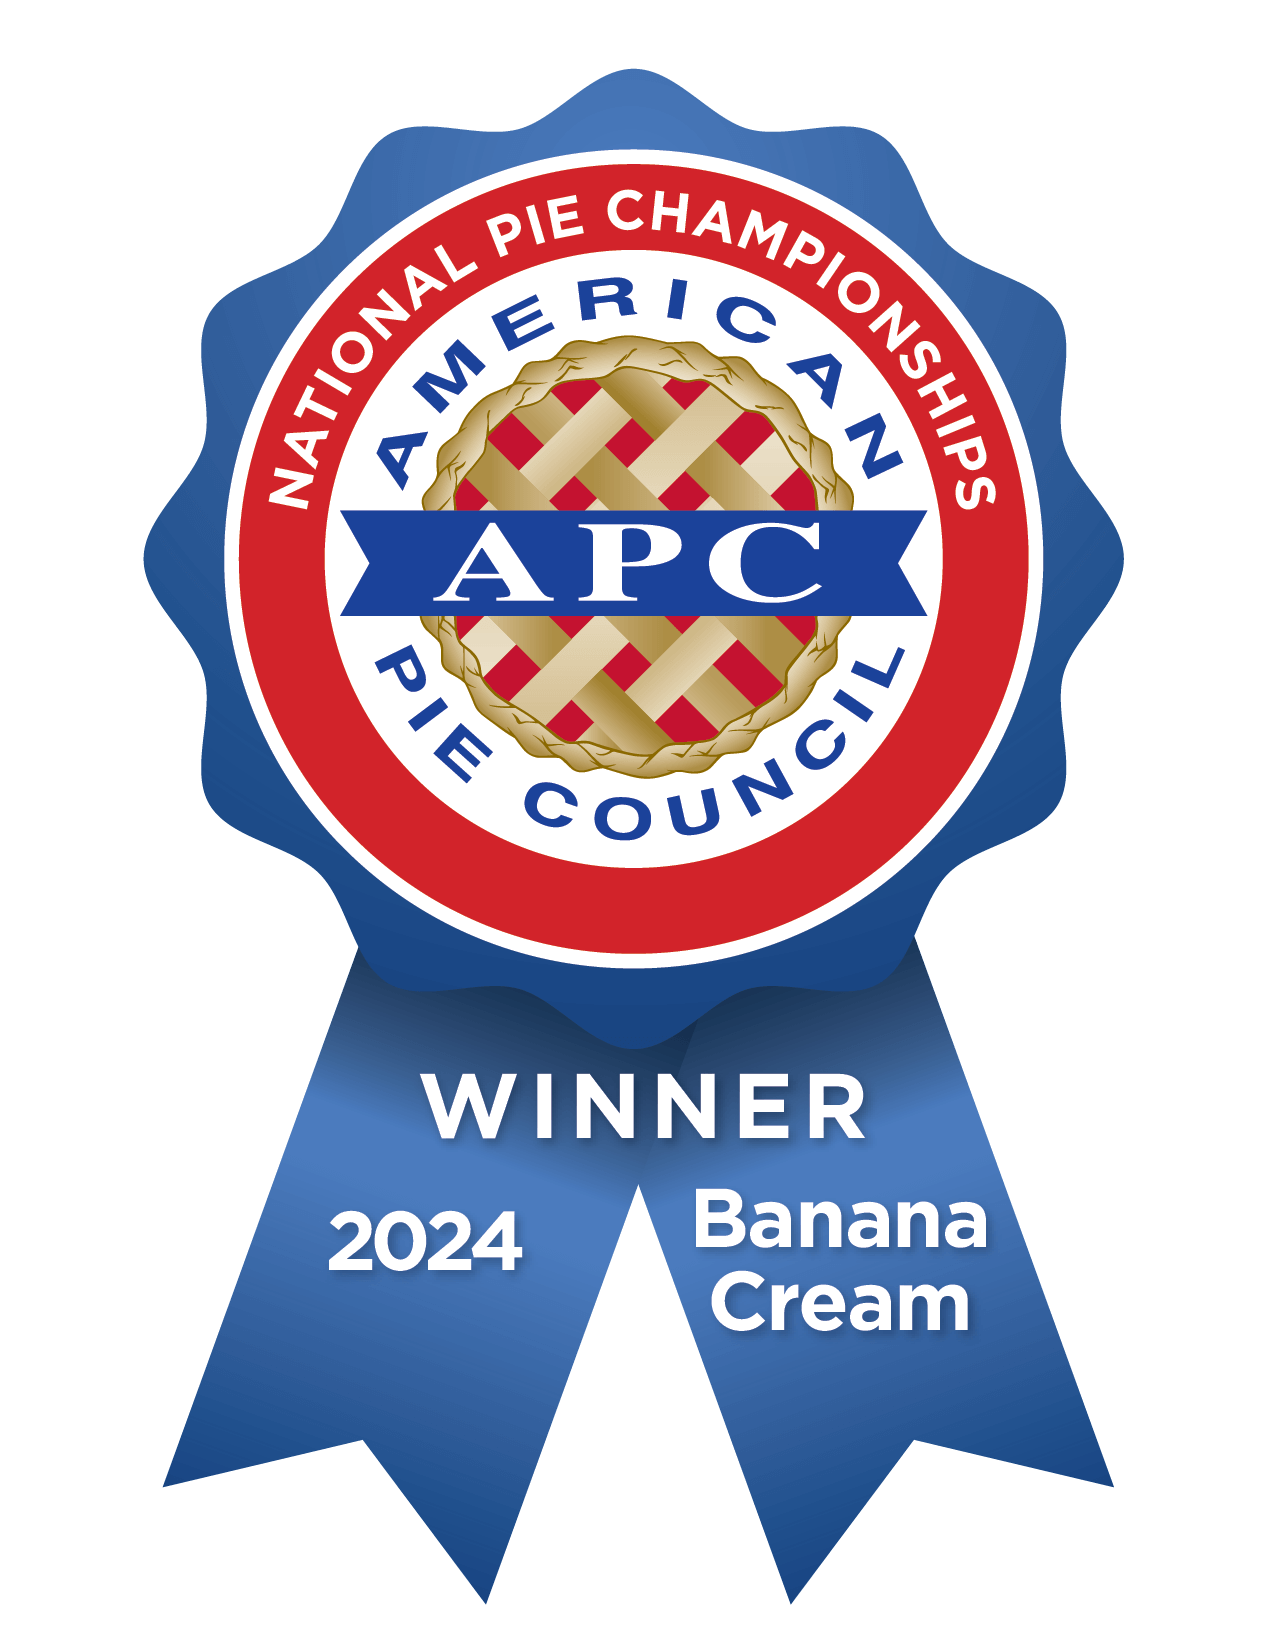 Banana Cream Ribbon